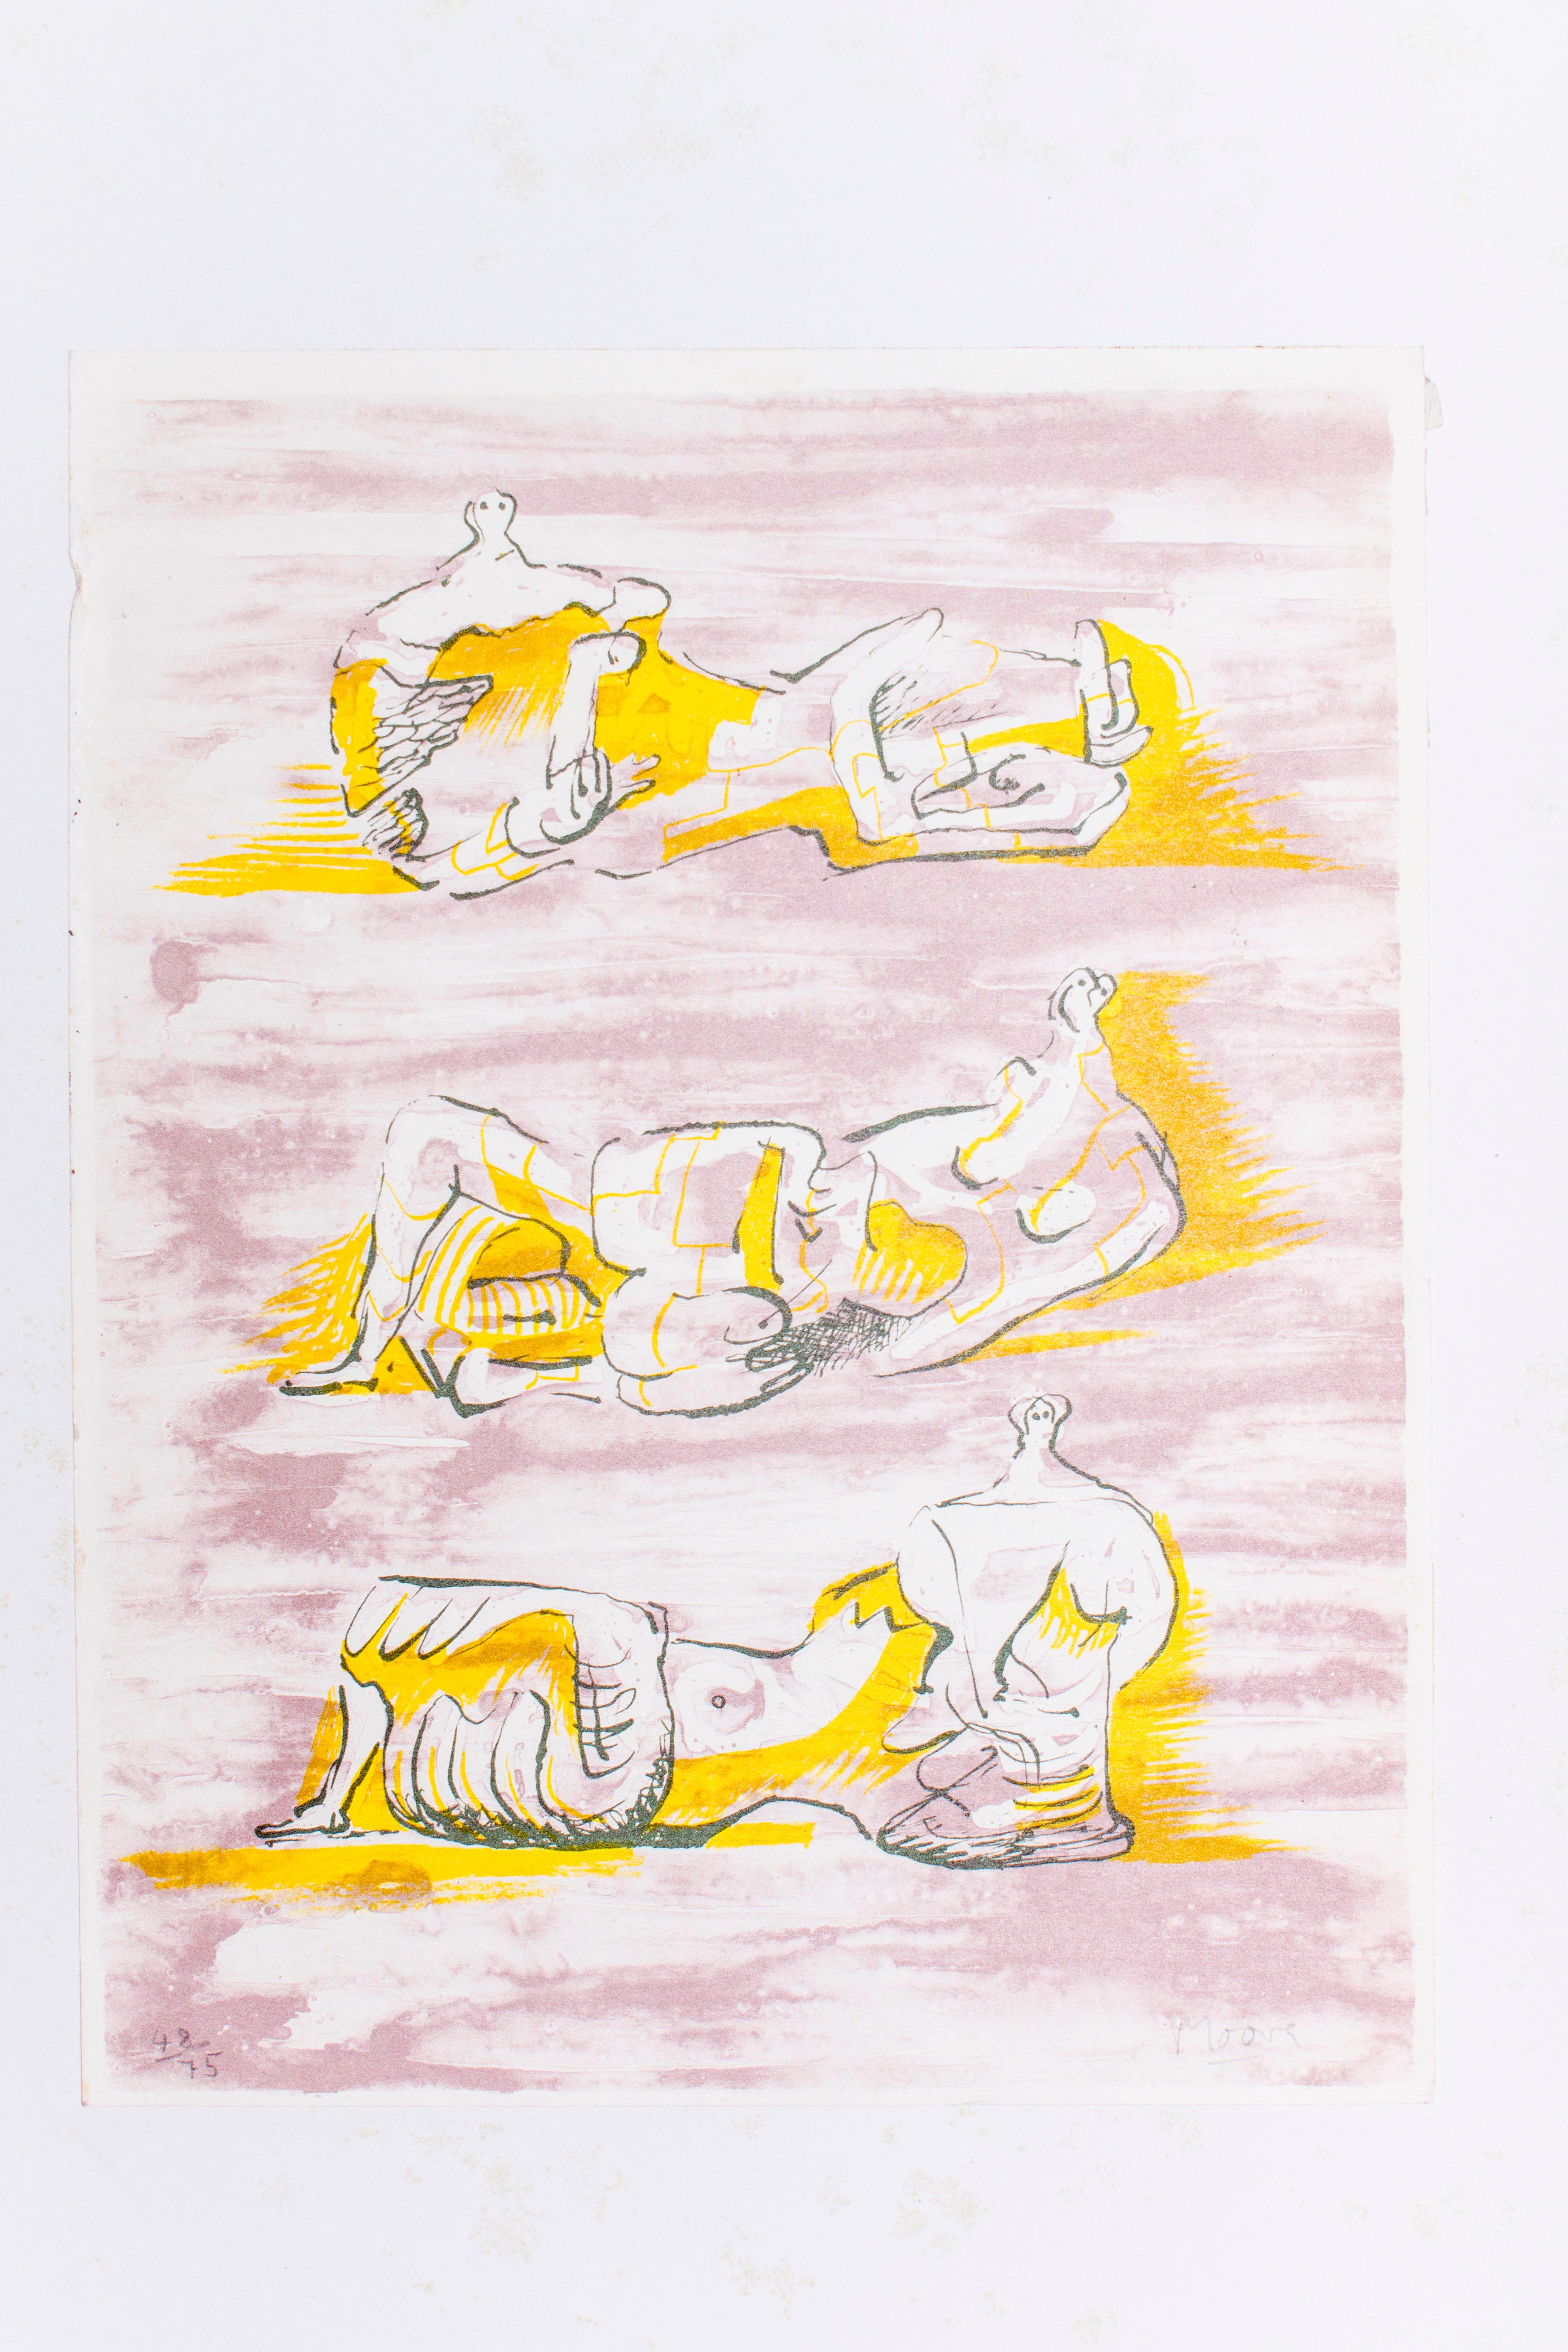 Signé à la main.
Édition de 75 tirages.
Publié dans le catalogue "Henry Moore : L'œuvre graphique 1931-1972", Gerald Cramer Editeur, Genève 1973, N. 180.

Très bon état.